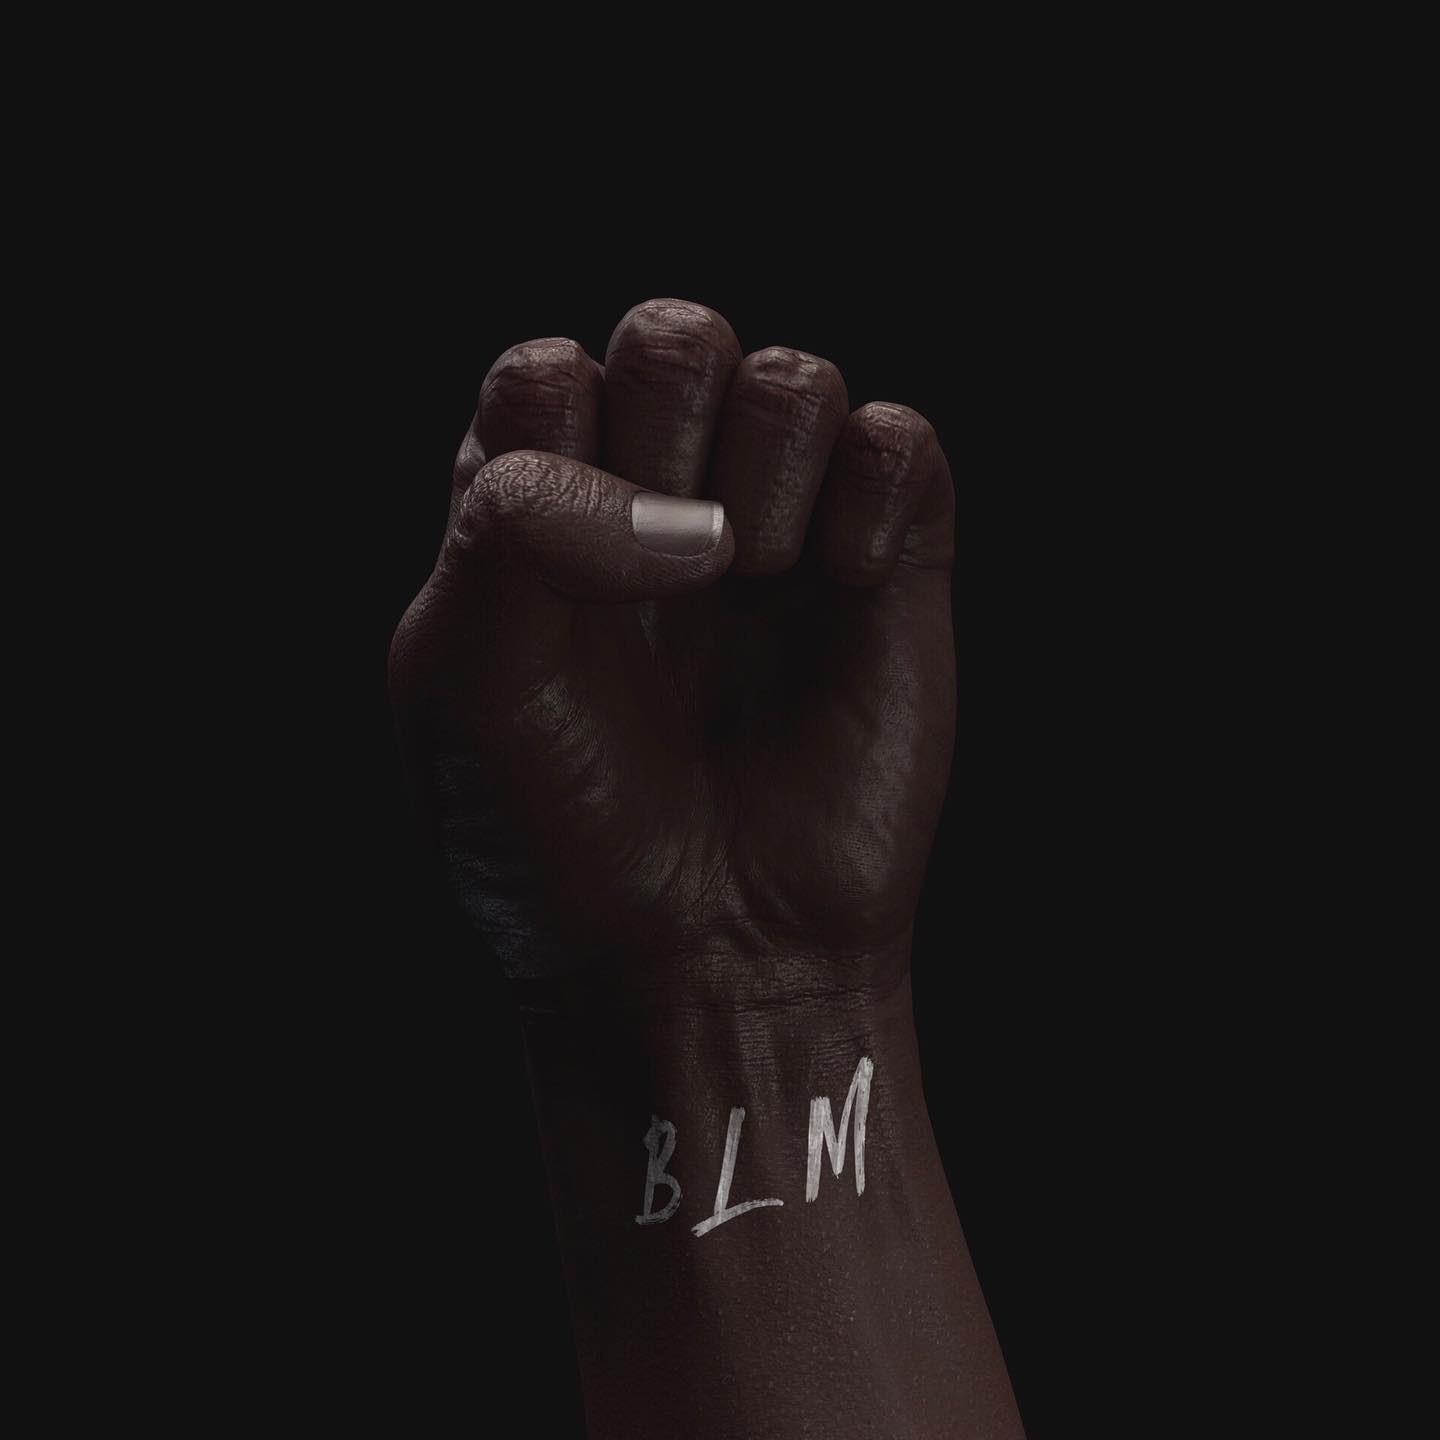 🖤
——
#blacklivesmatter #blm #racism #strongertogether #artwork #3d #rendering #skin #color